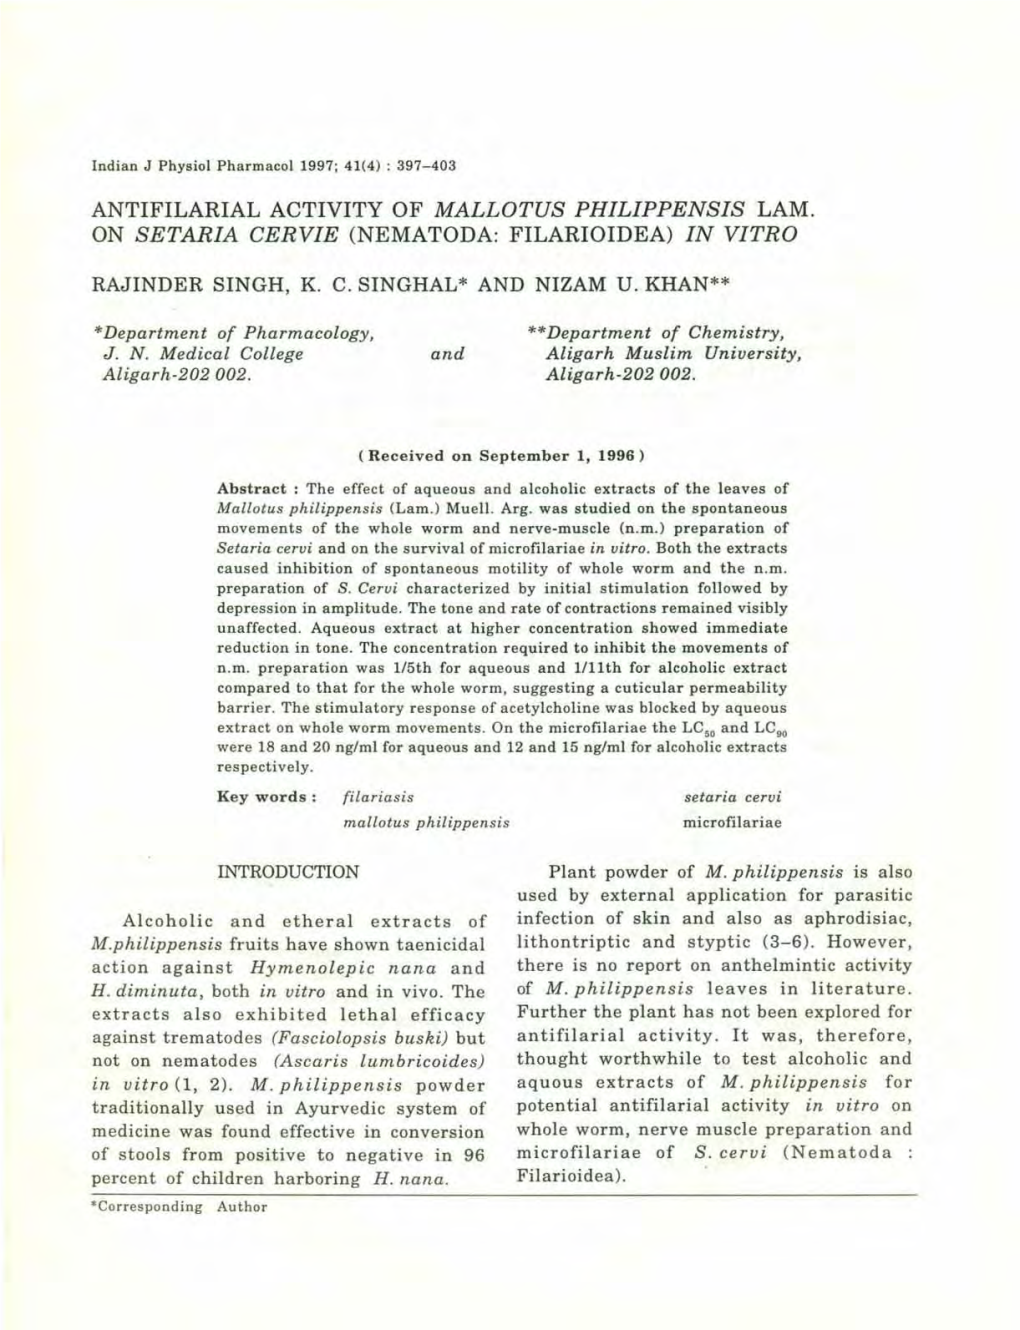 Antifilarial Activity of Mallotus Philippensis Lam. on Setaria Cervie (Nematoda: Filarioidea) in Vitro